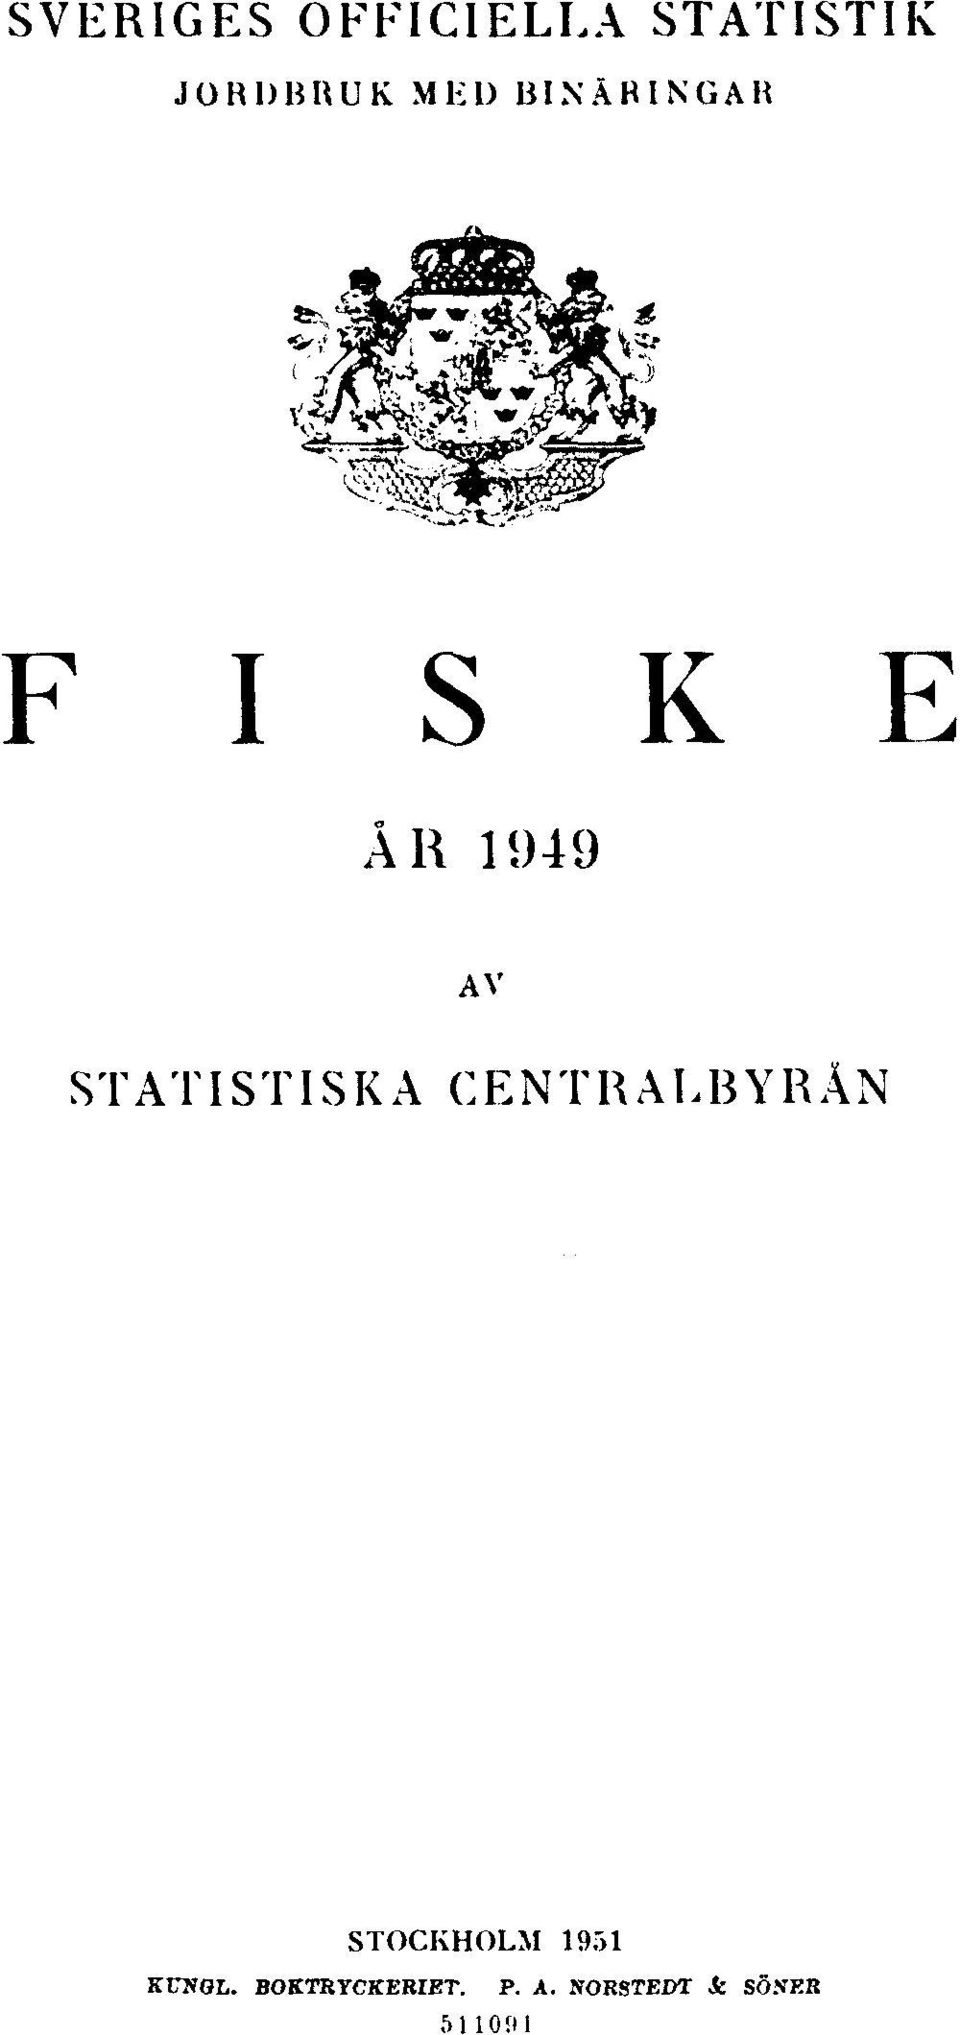 STATISTISKA CENTRALBYRÅN STOCKHOLM 1951